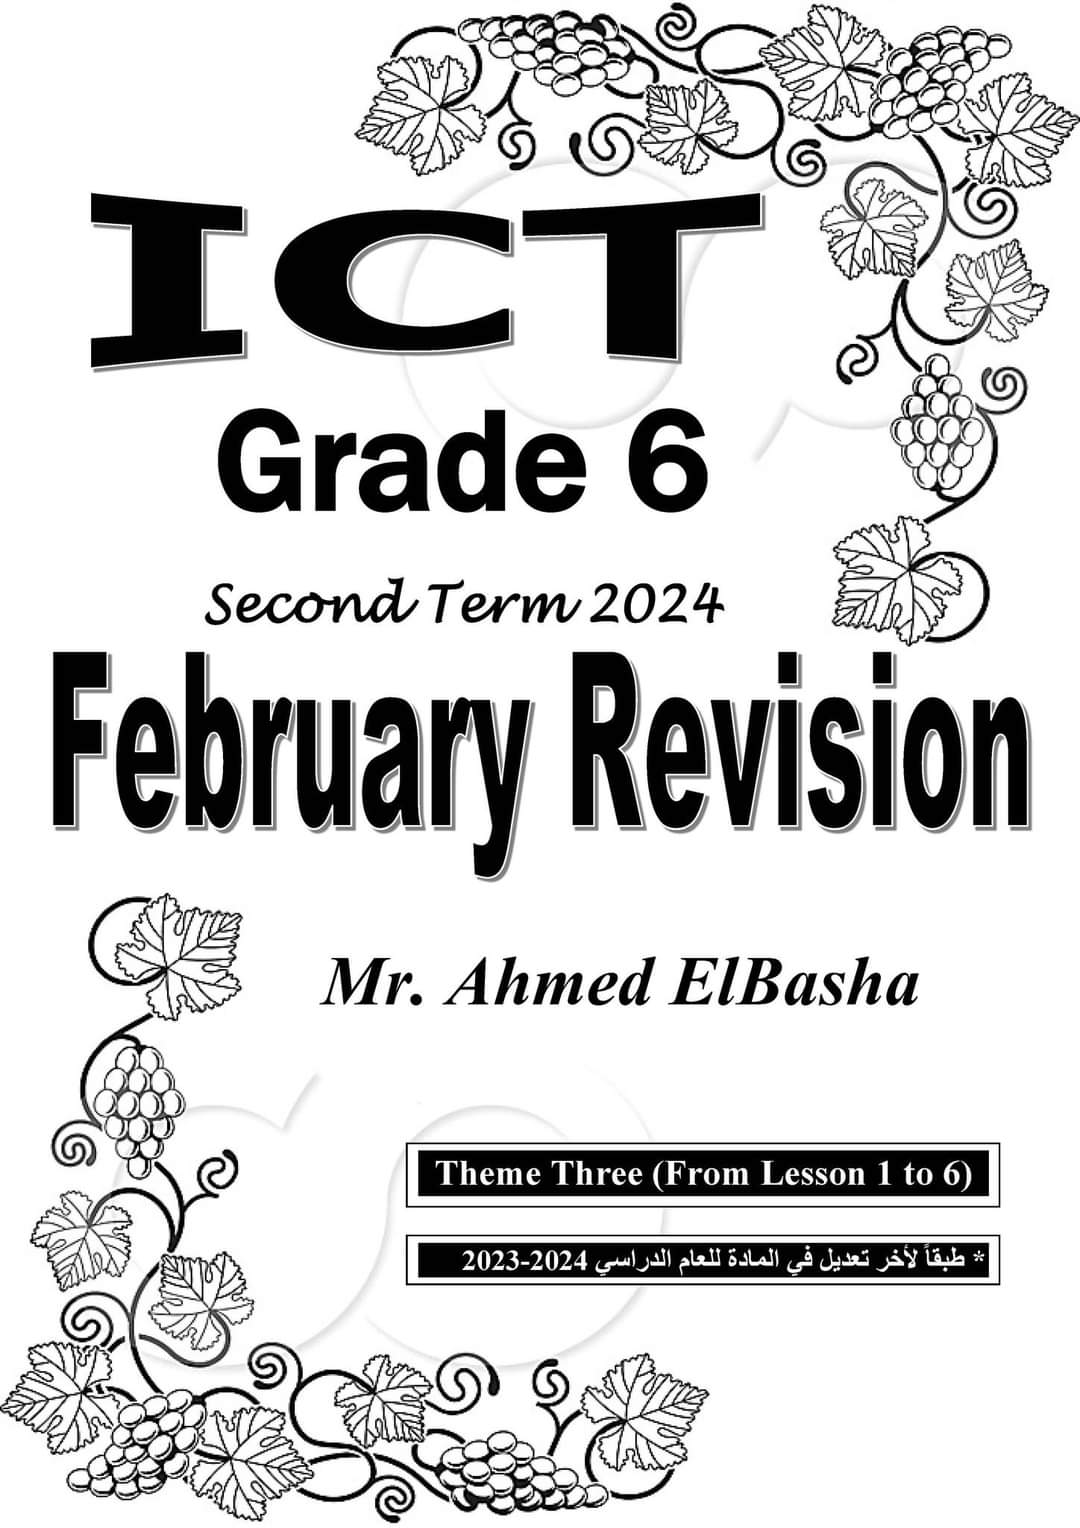 مراجعة فبراير ICT الصف السادس الابتدائي لغات مستر احمد الباشا - تحميل مراجعات احمد الباشا